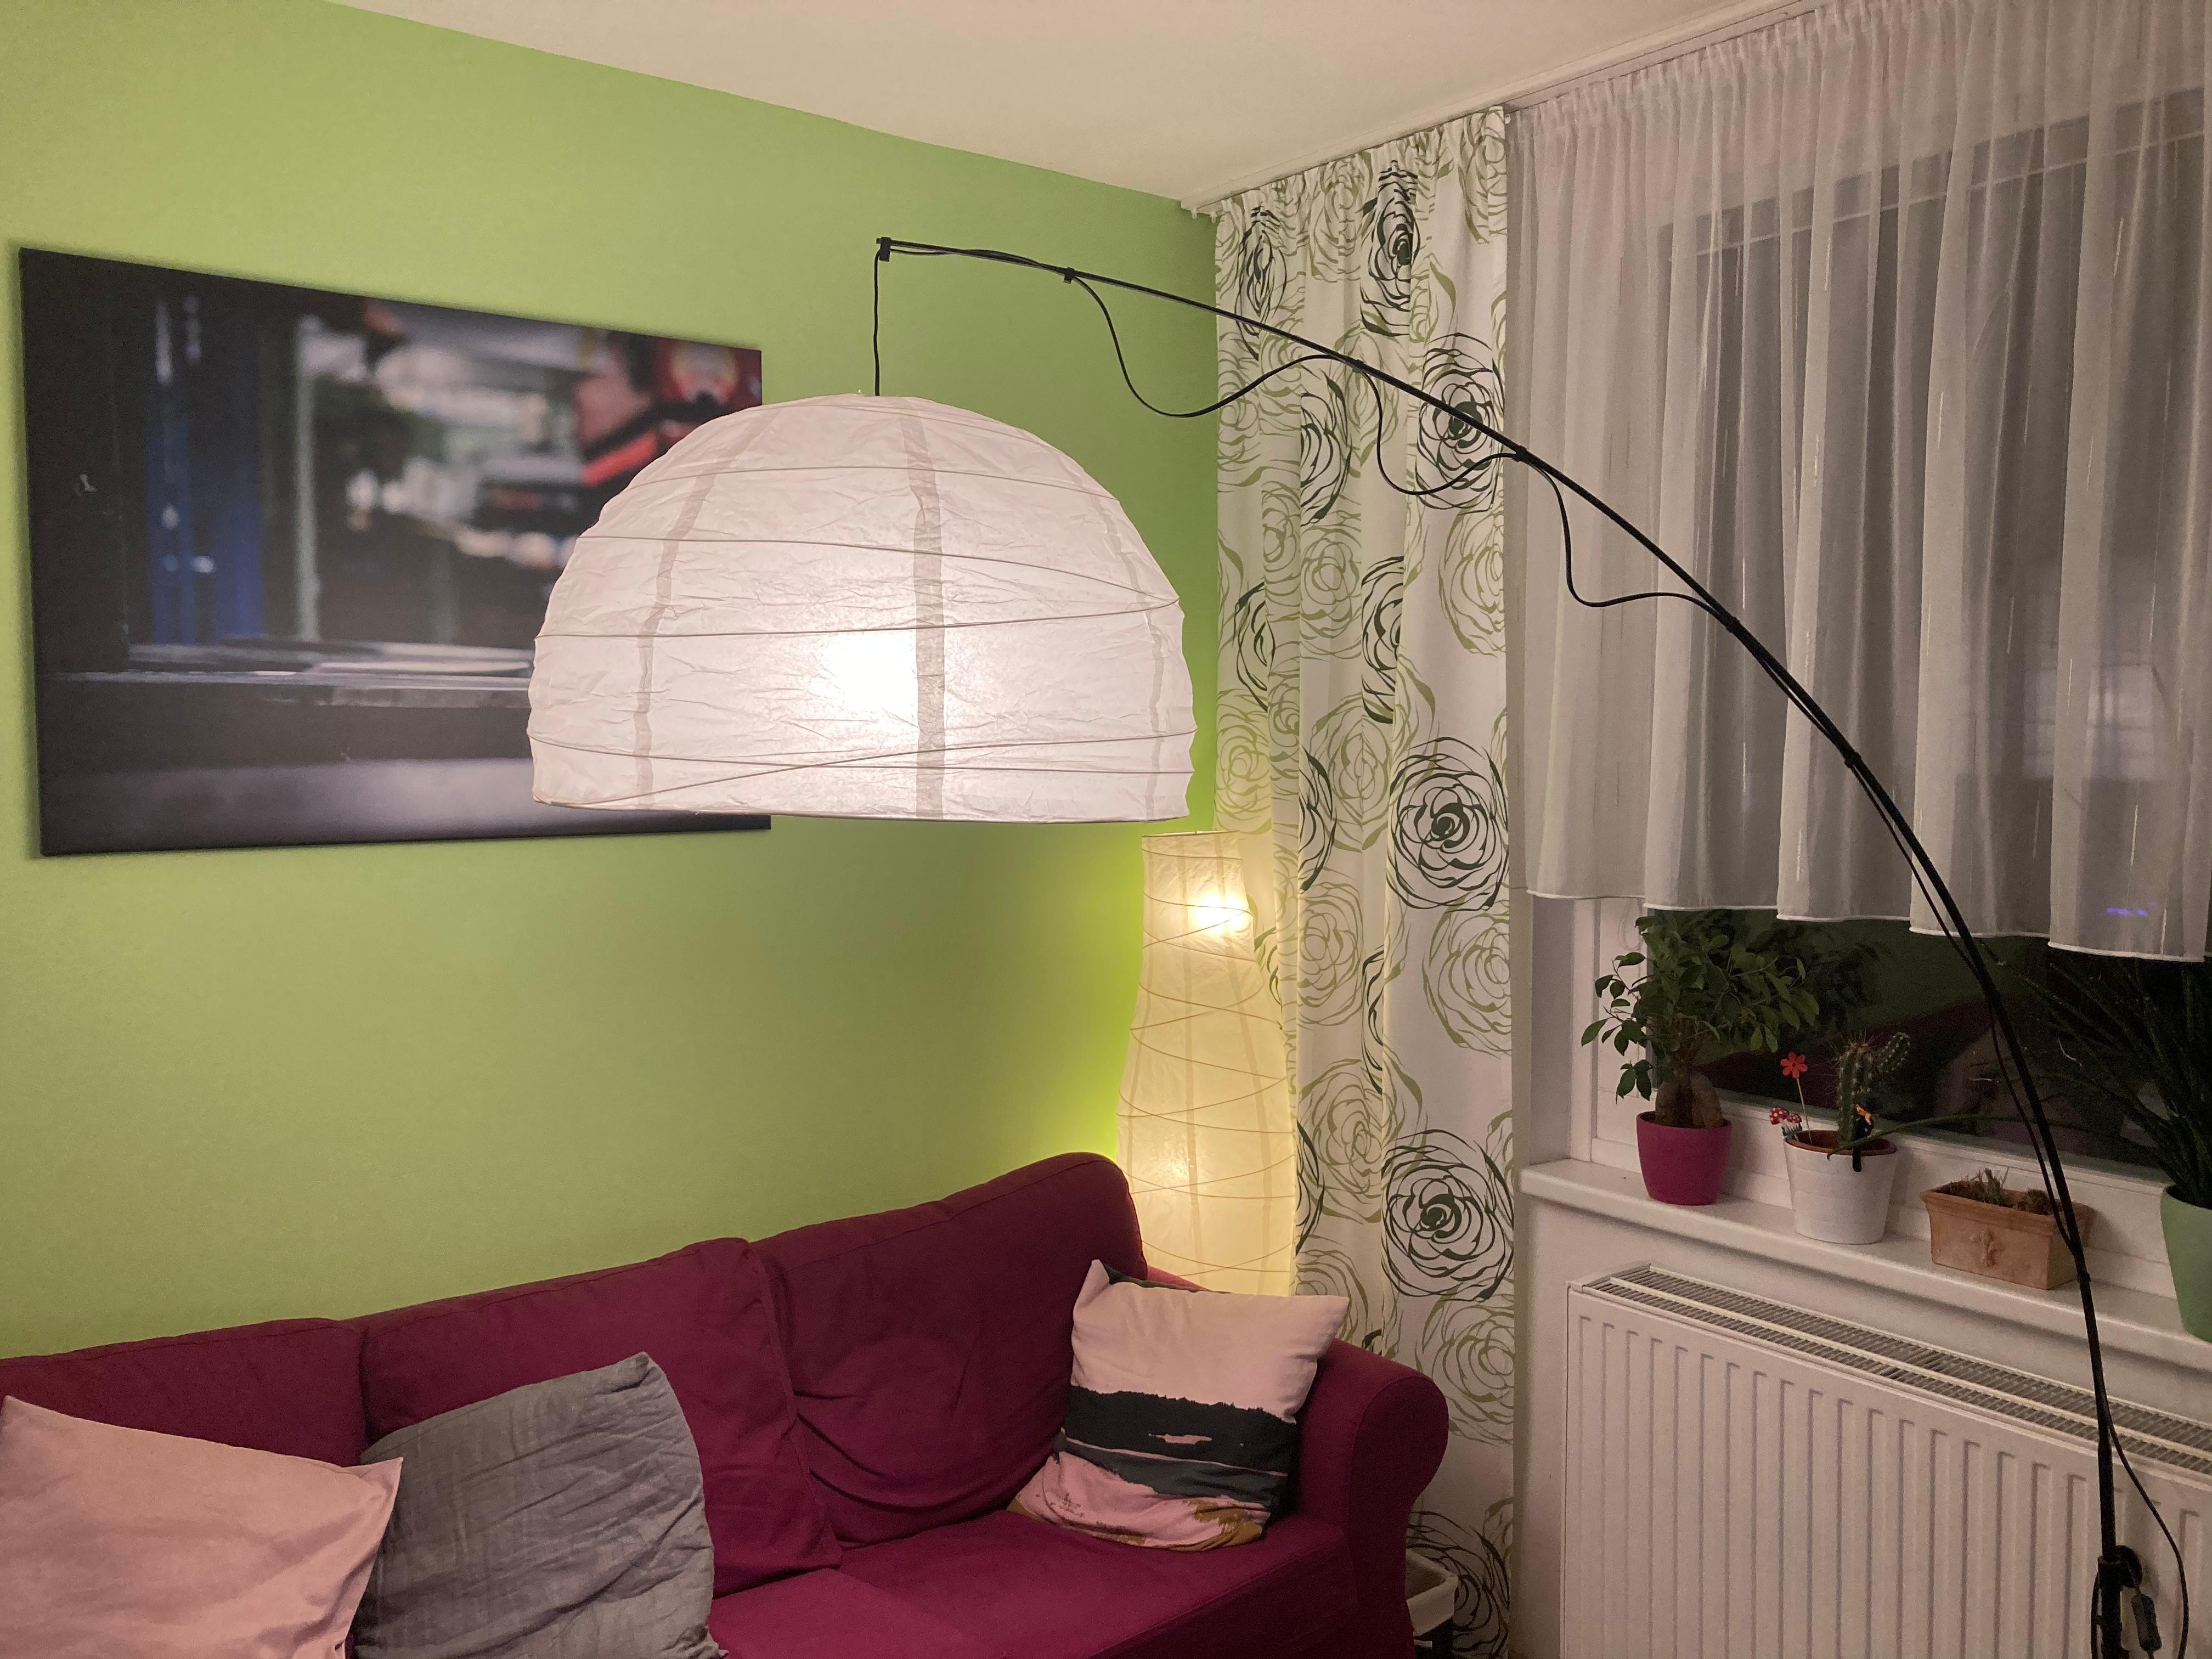 Ikea Lampe: leider ist der Schirm defekt. Suche einen neuen, der ebenso hell ist, Wand wird grau habt ihr Tipps?  Danke 